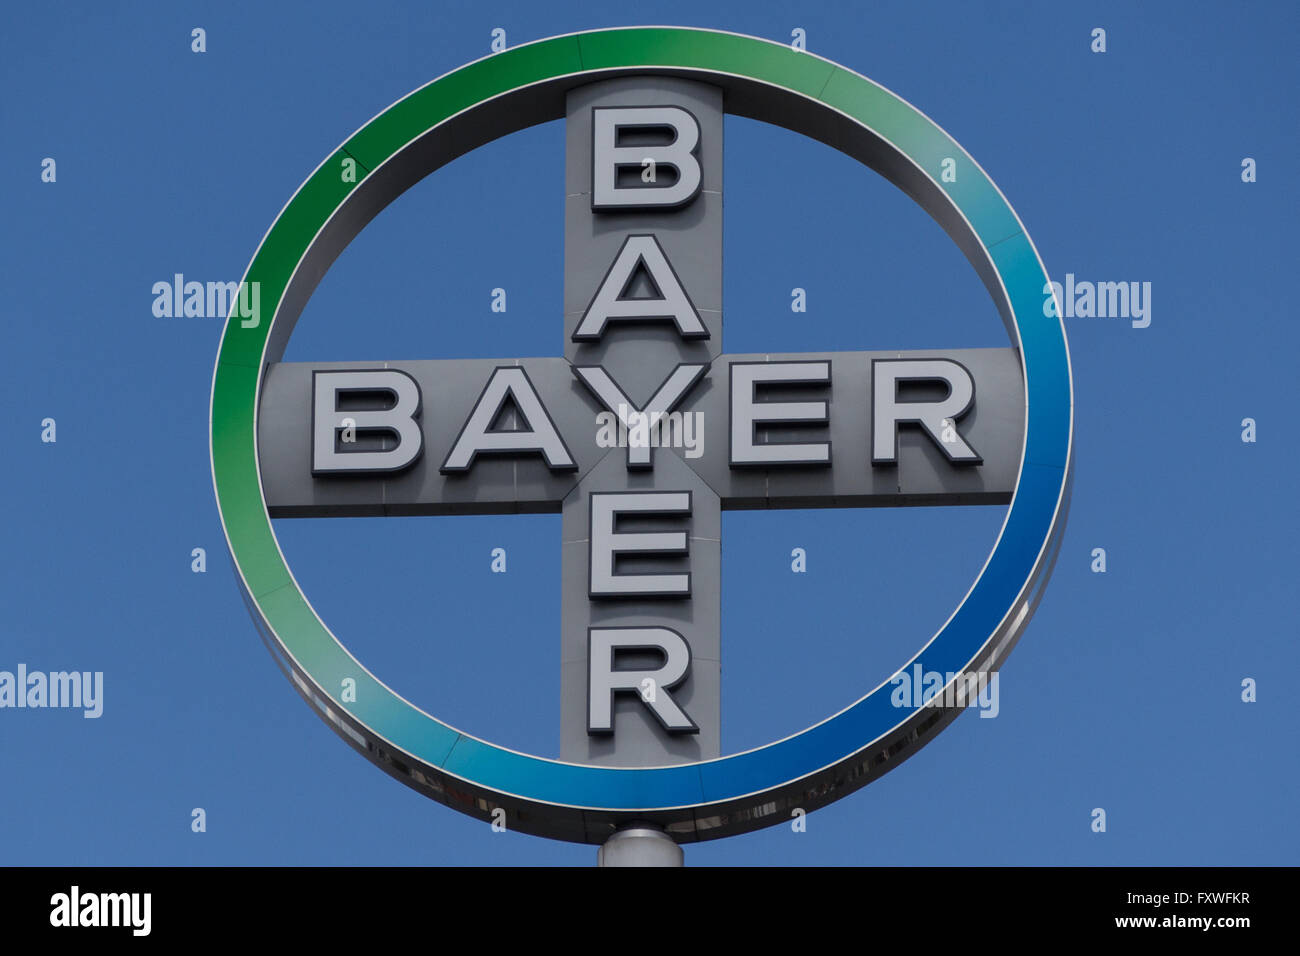 L'emblème de Bayer AG. Bayer AG est une entreprise pharmaceutique et chimique allemande. Banque D'Images